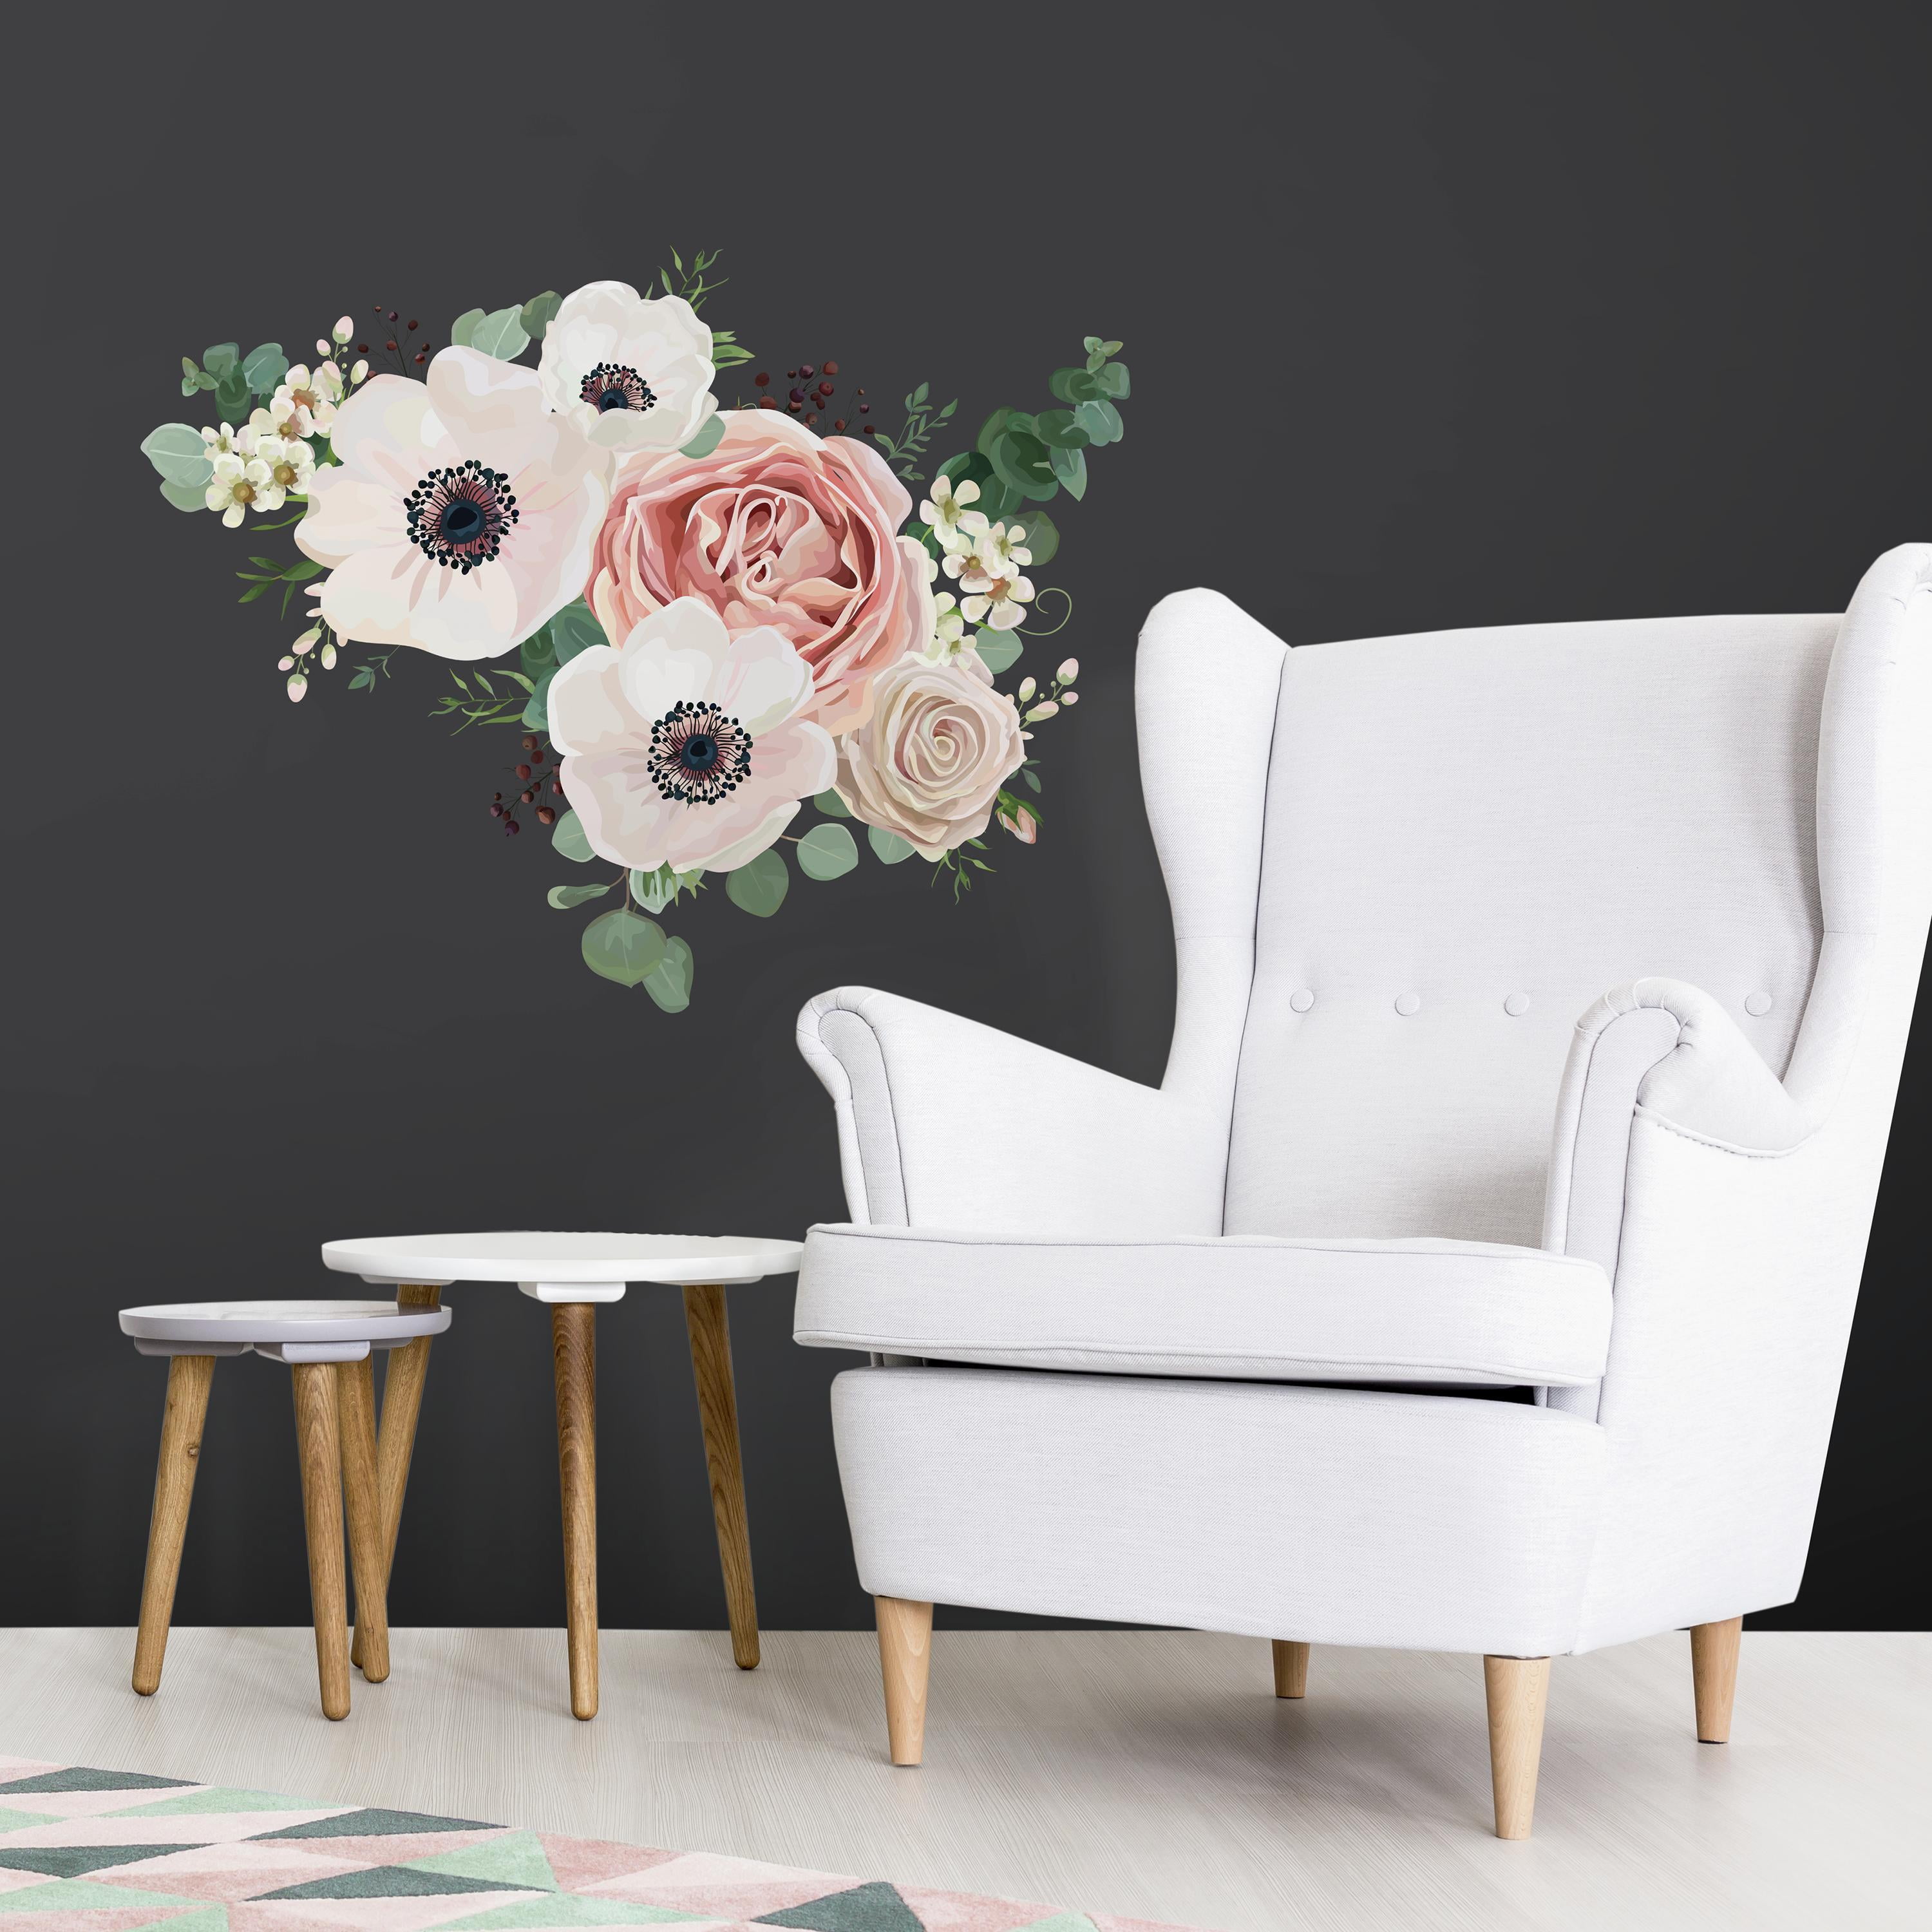 Furniture & Wall Self Adhesive Stickers Cut & Stick Clear White Cat Rose Sticker